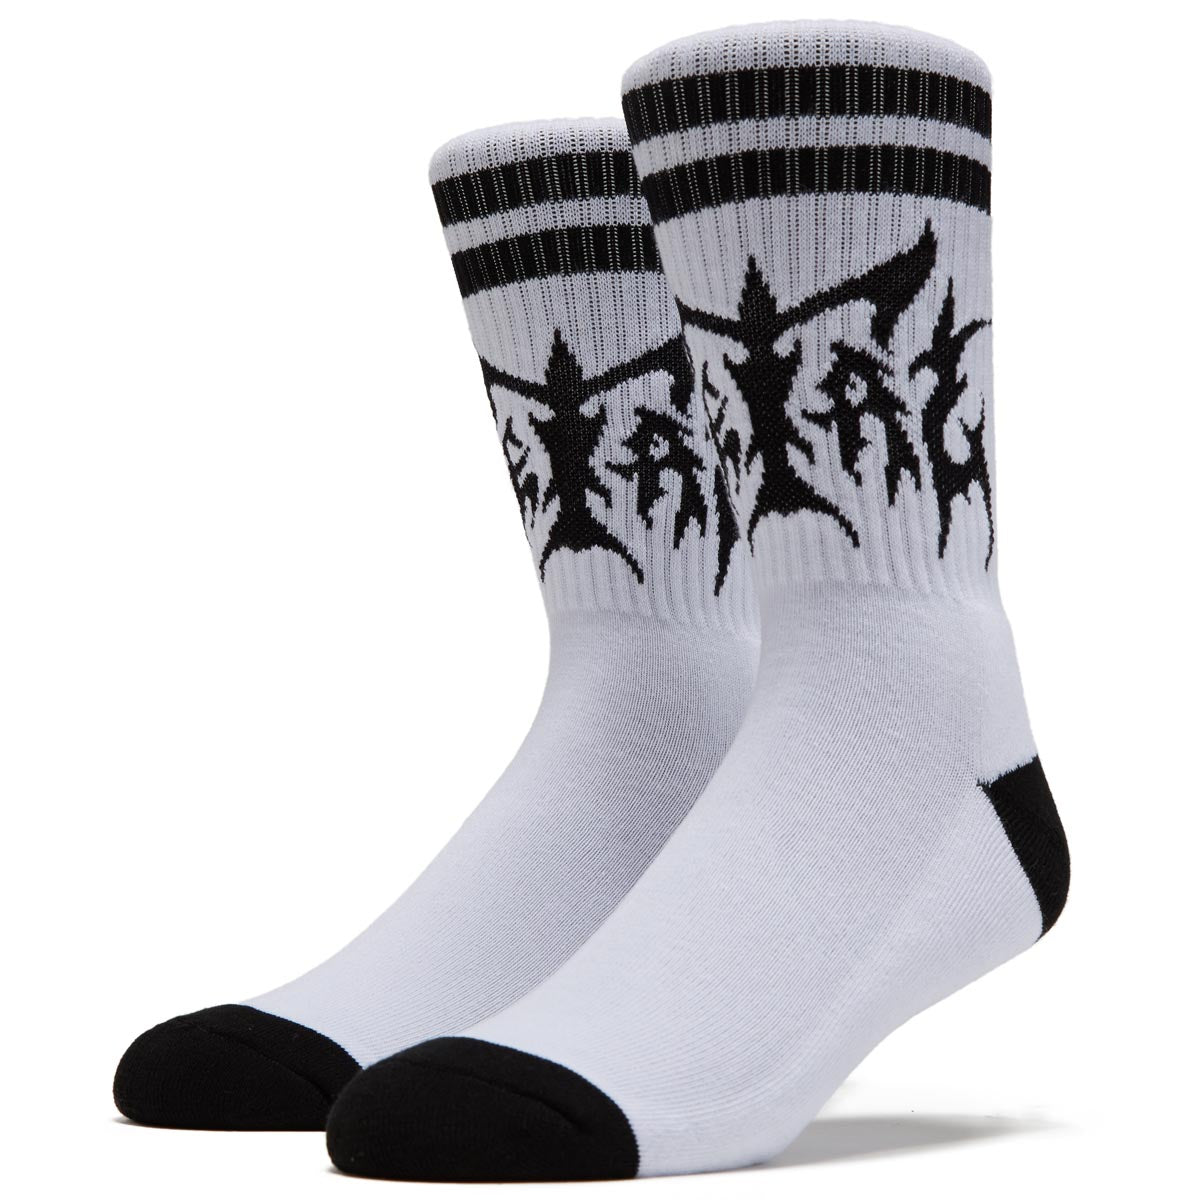 Metal Hesher Socks - White/Black image 1